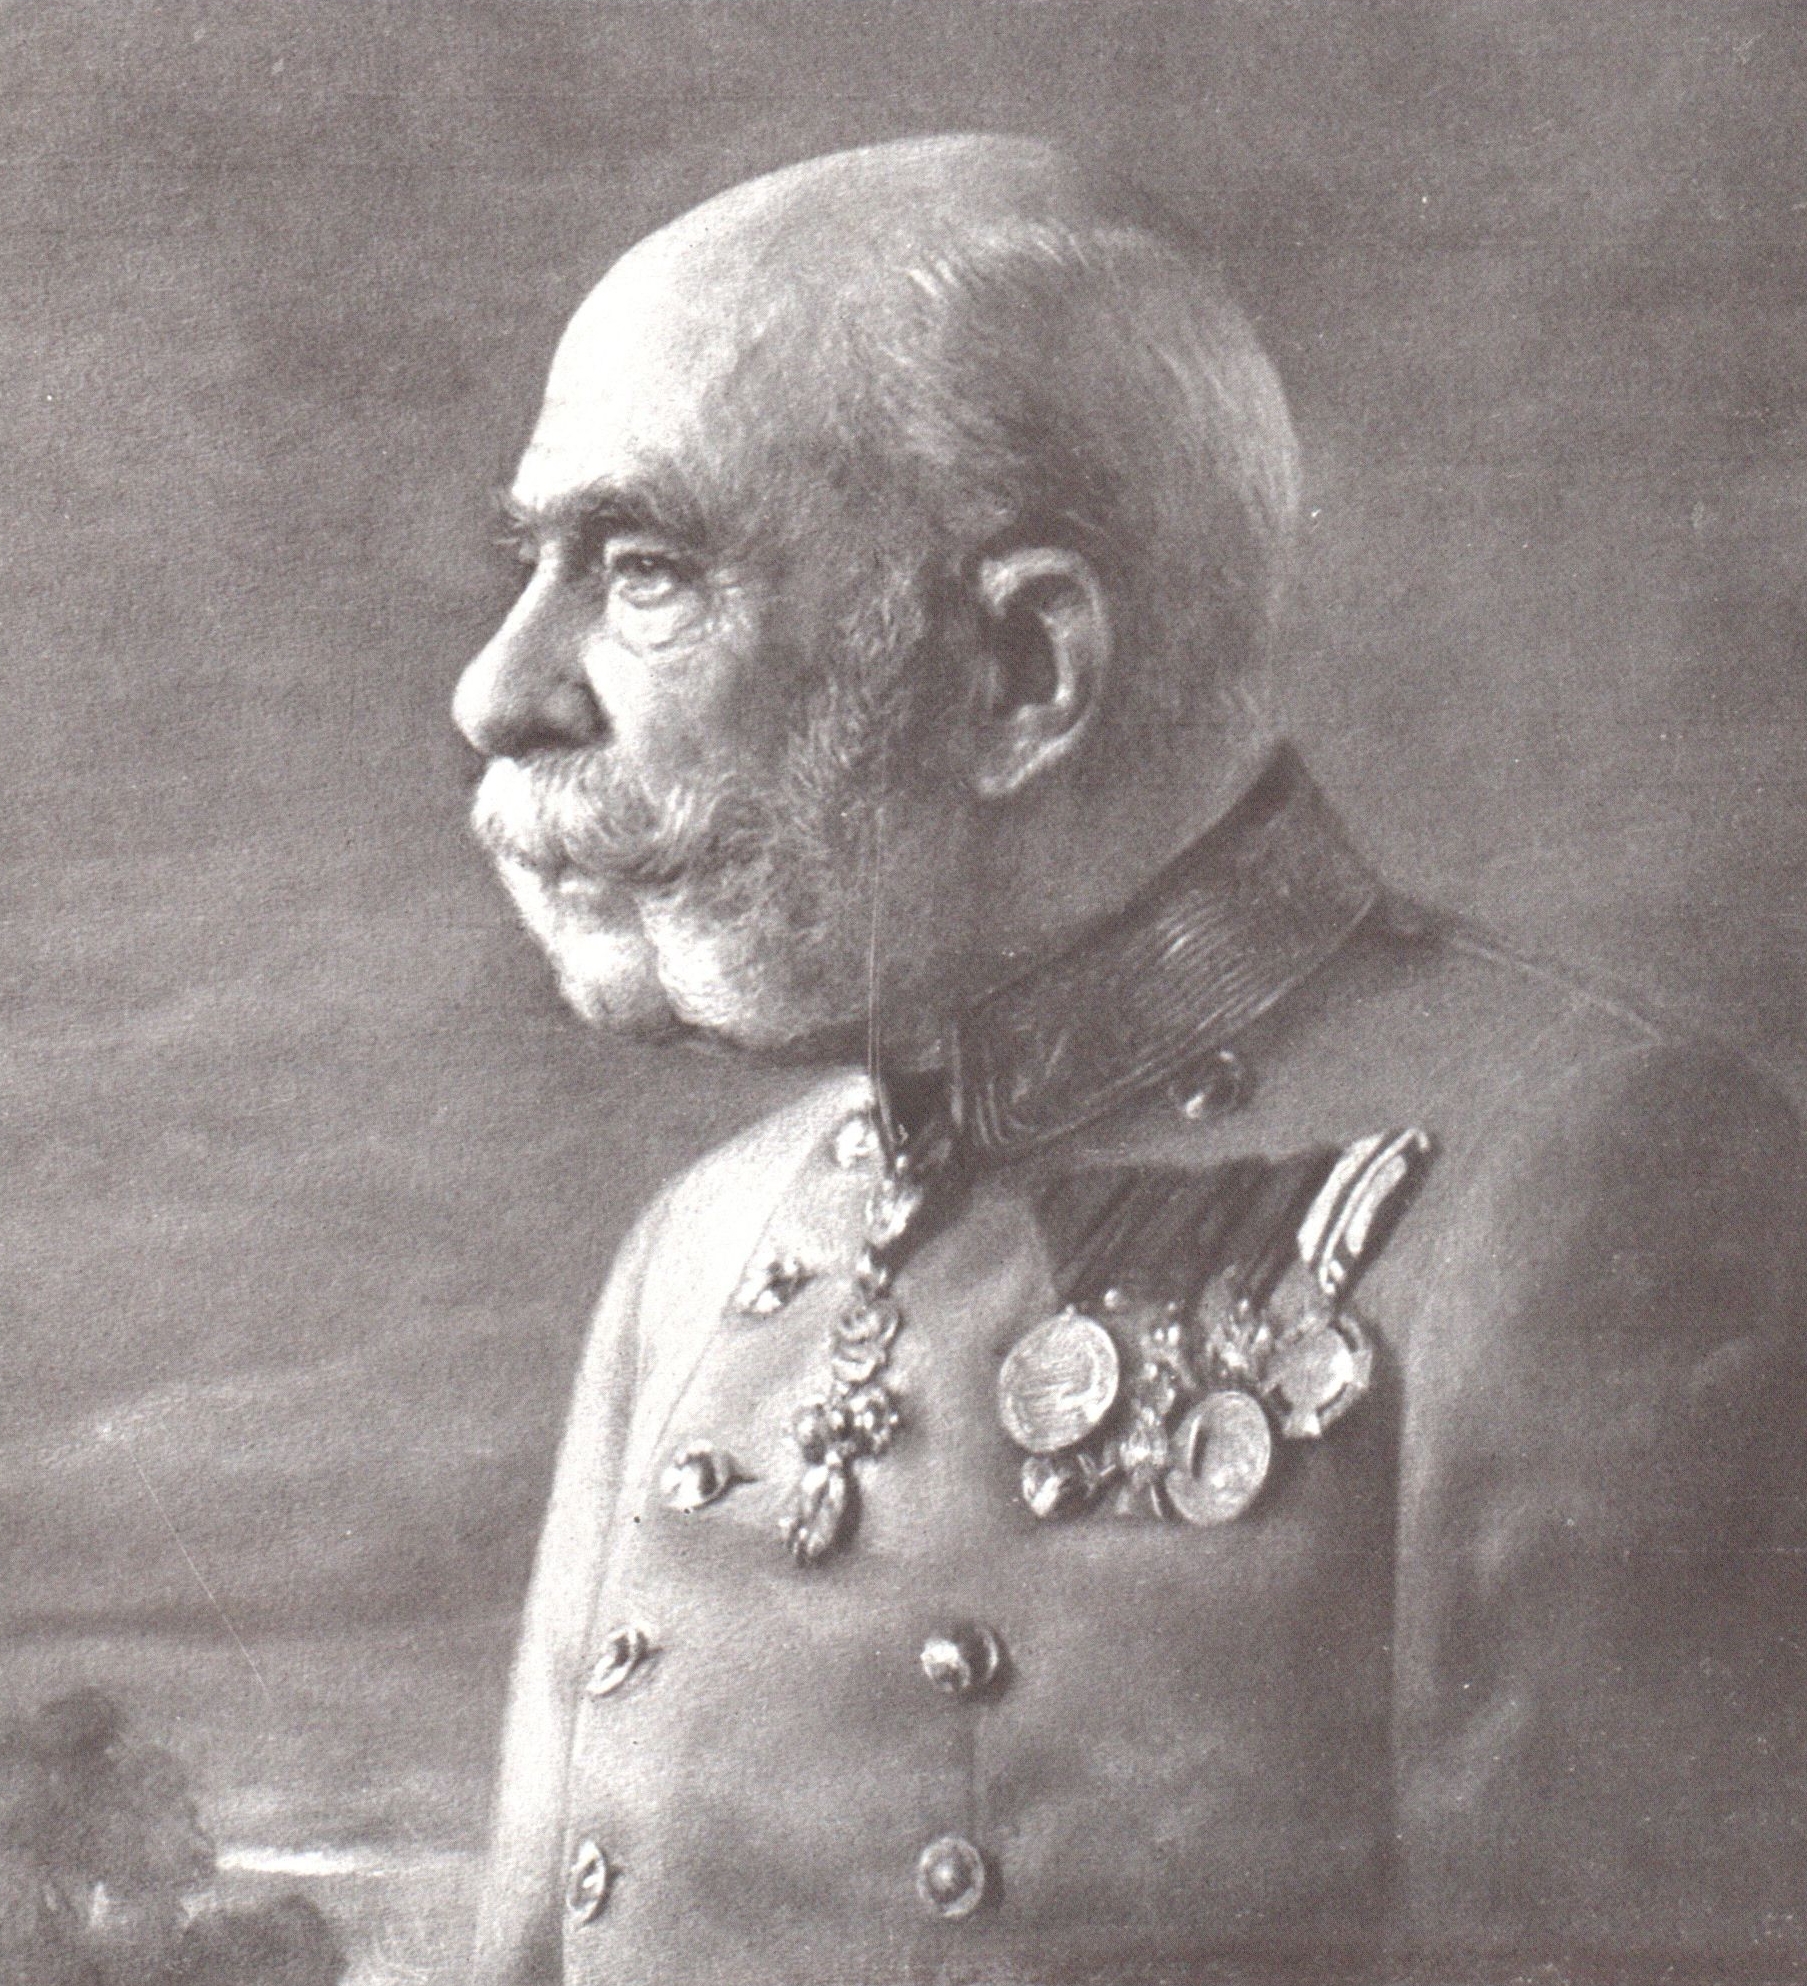 Император Франц Иосиф. Фотоокрытка, напечатанная посмертно 25 ноября 1916 года.